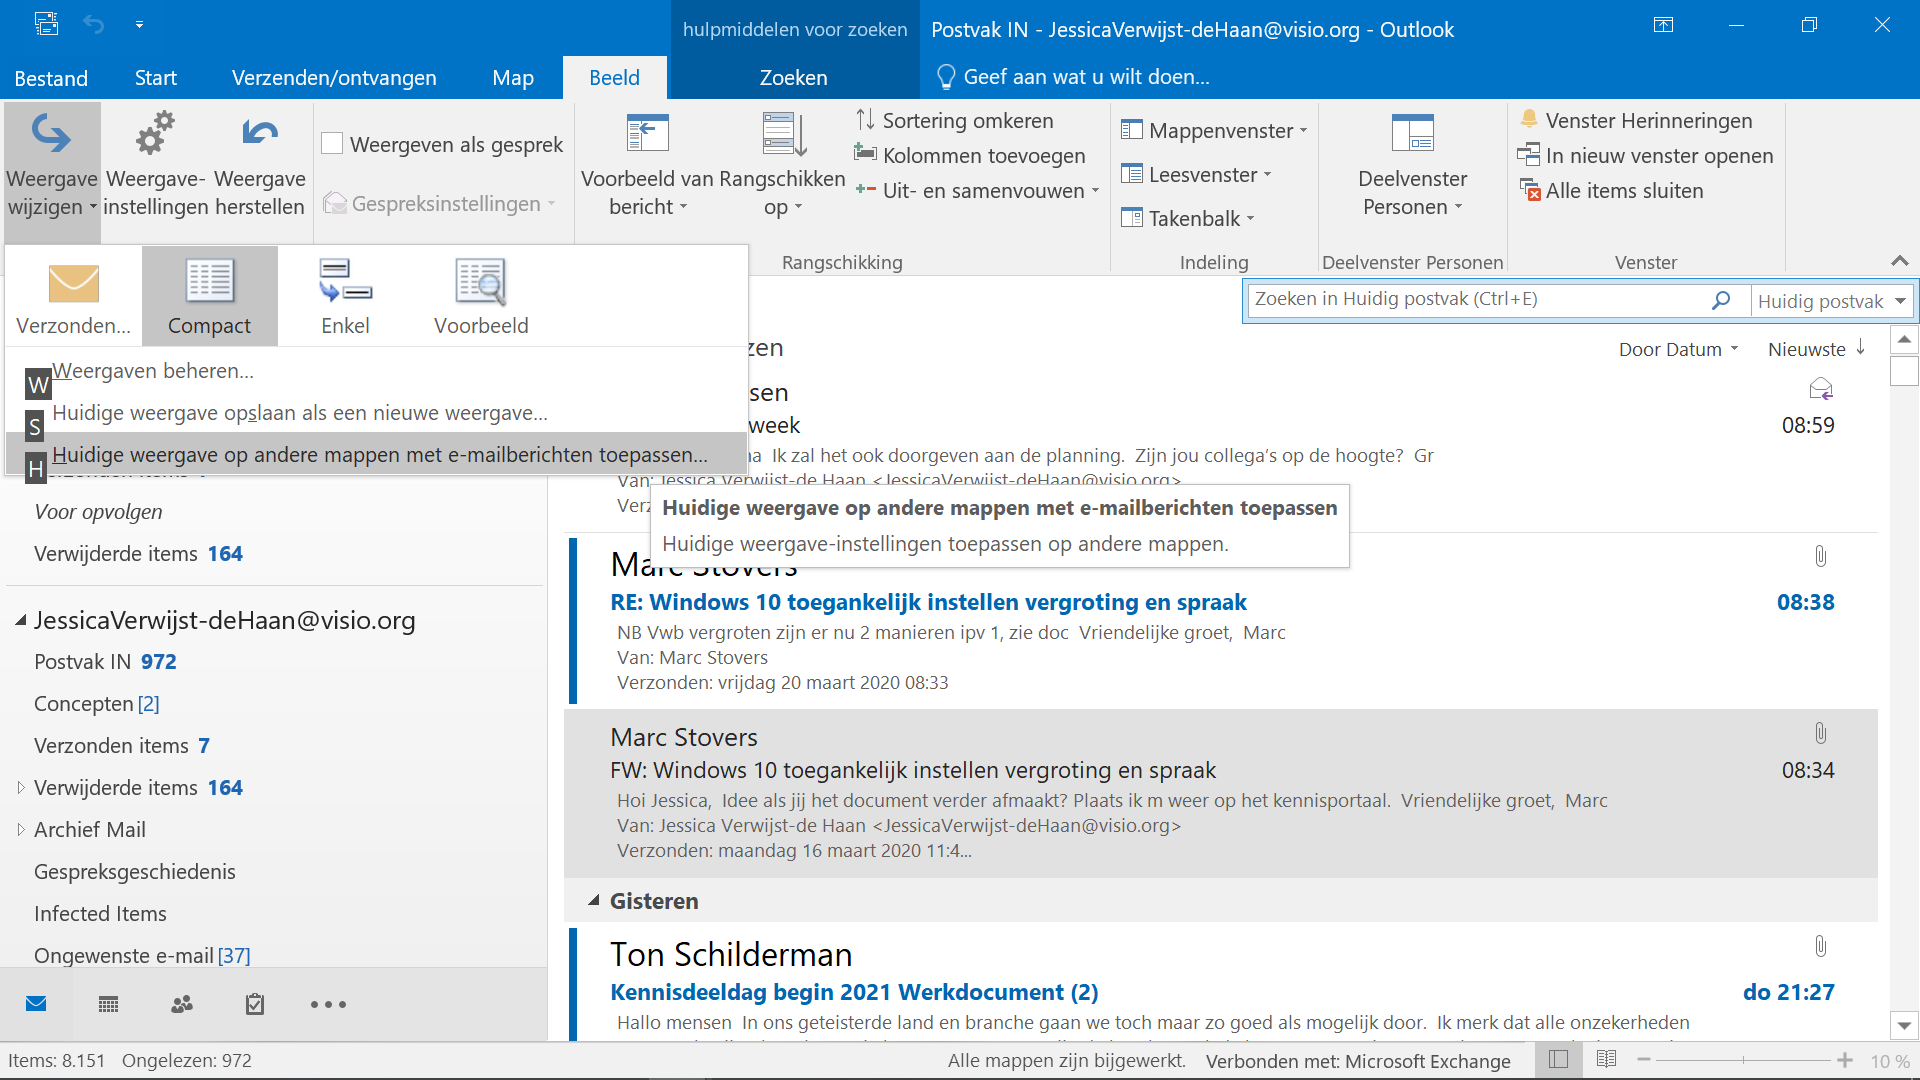 Outlook instellingen toepassen
scherm